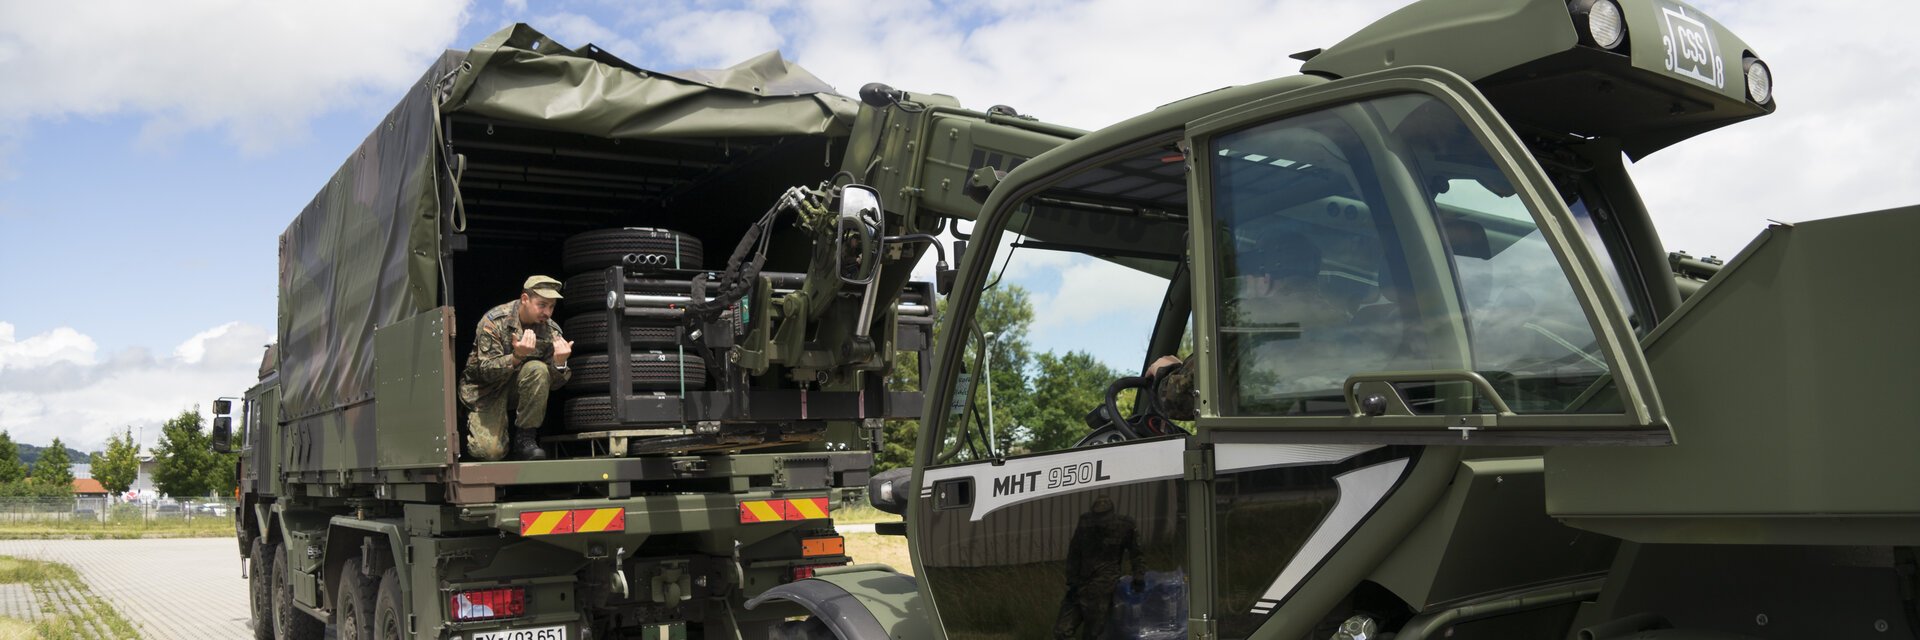 Soldaten beladen mit Hilfe eines Staplers einen LKW der Bundeswehr